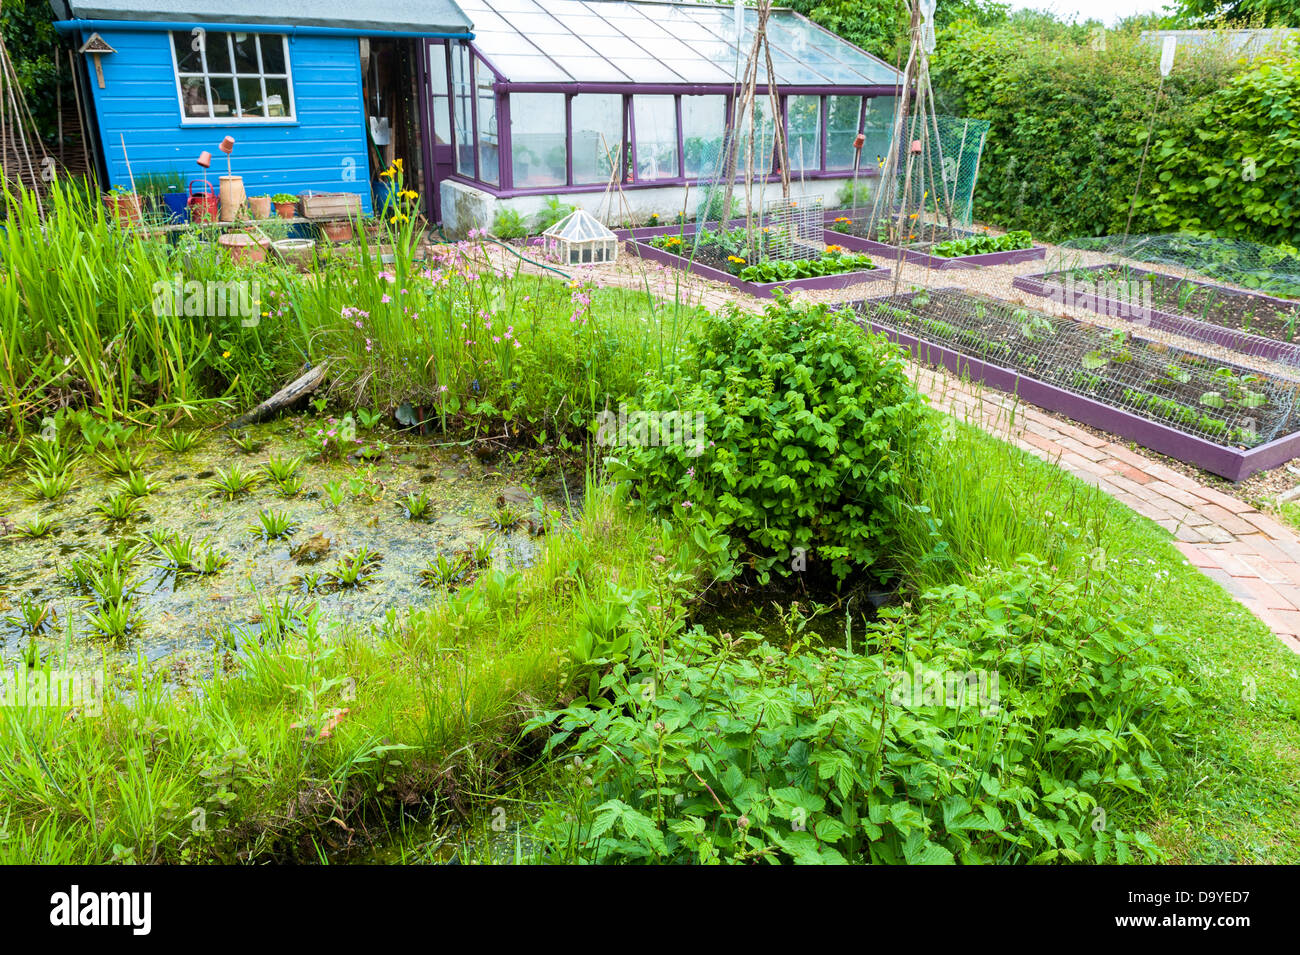 Kleiner Garten im Frühsommer mit Wildtieren Teich, Hochbeete und Schindeln Pfade, Norfolk, England, Juni Stockfoto